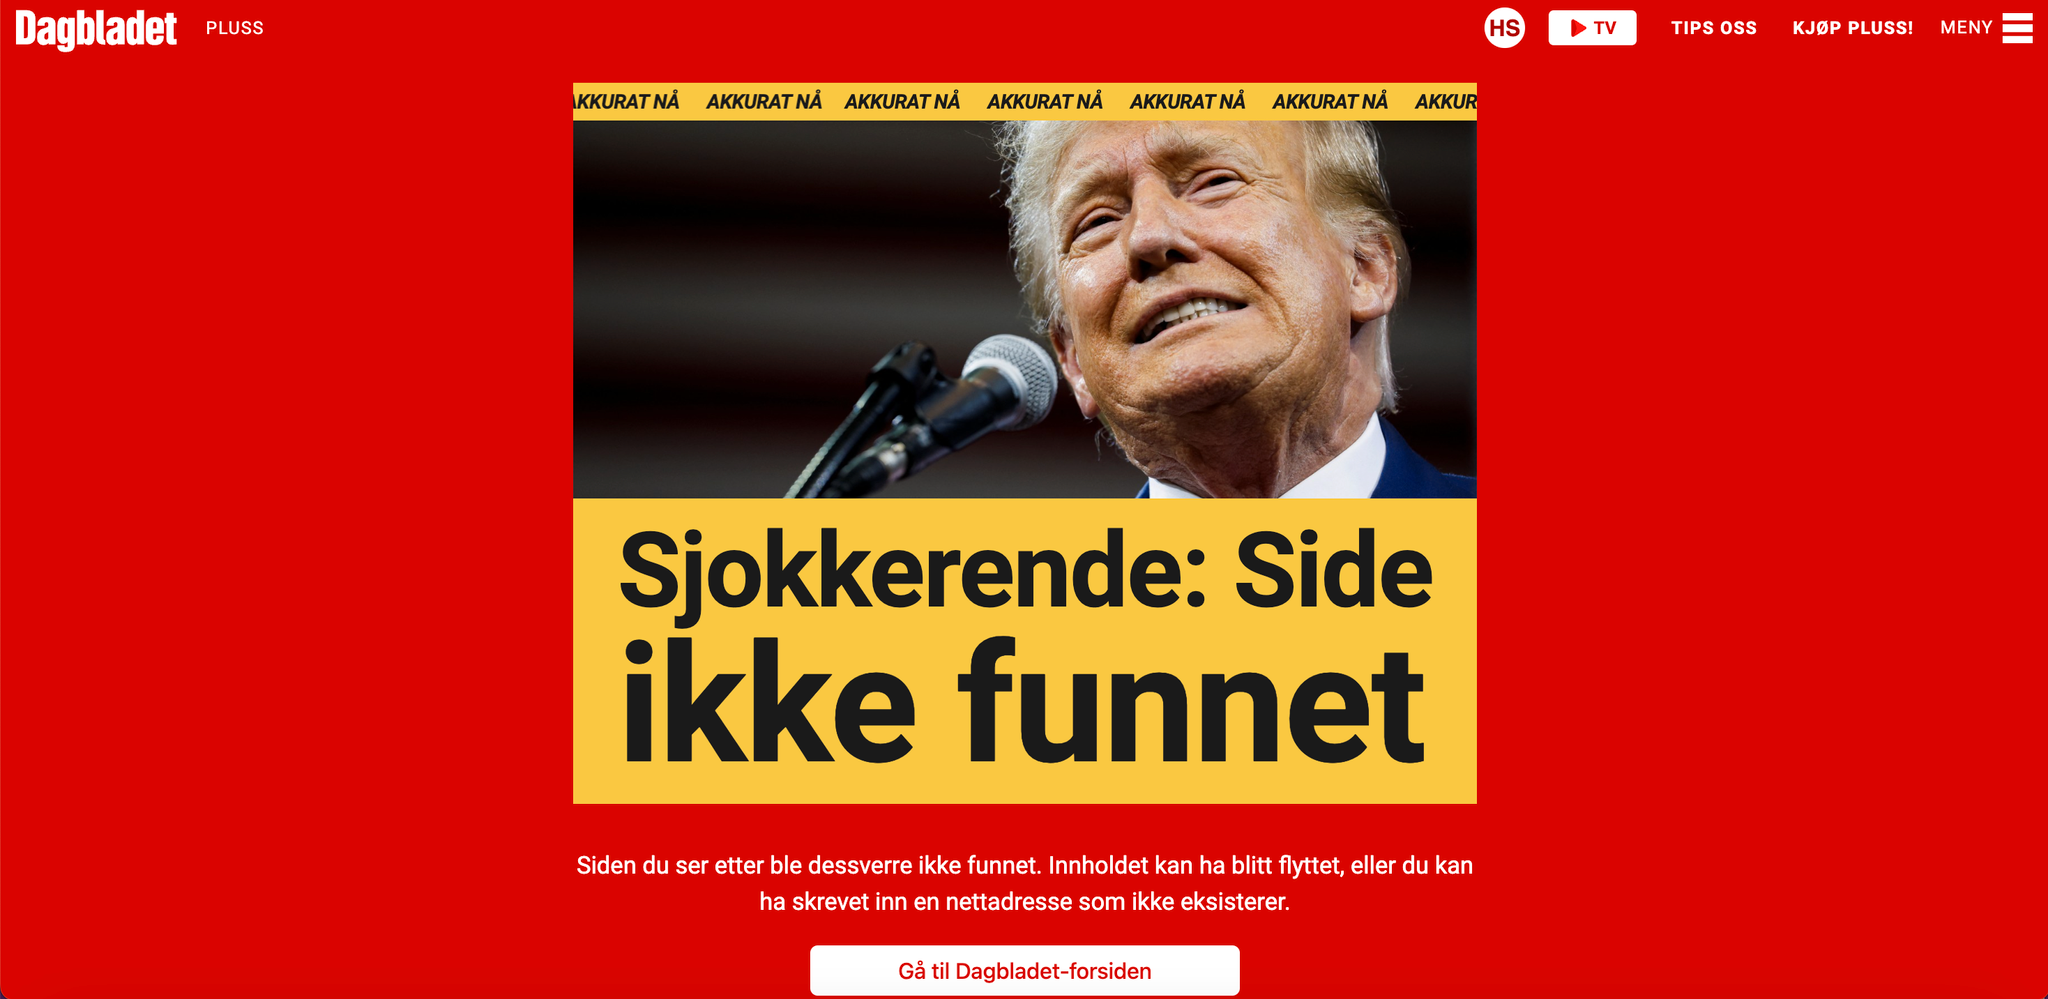 Kort tid etter at Aftenposten publiserte denne artikkelen, avpubliserte Dagbladet intervjuet med Harald Eia.